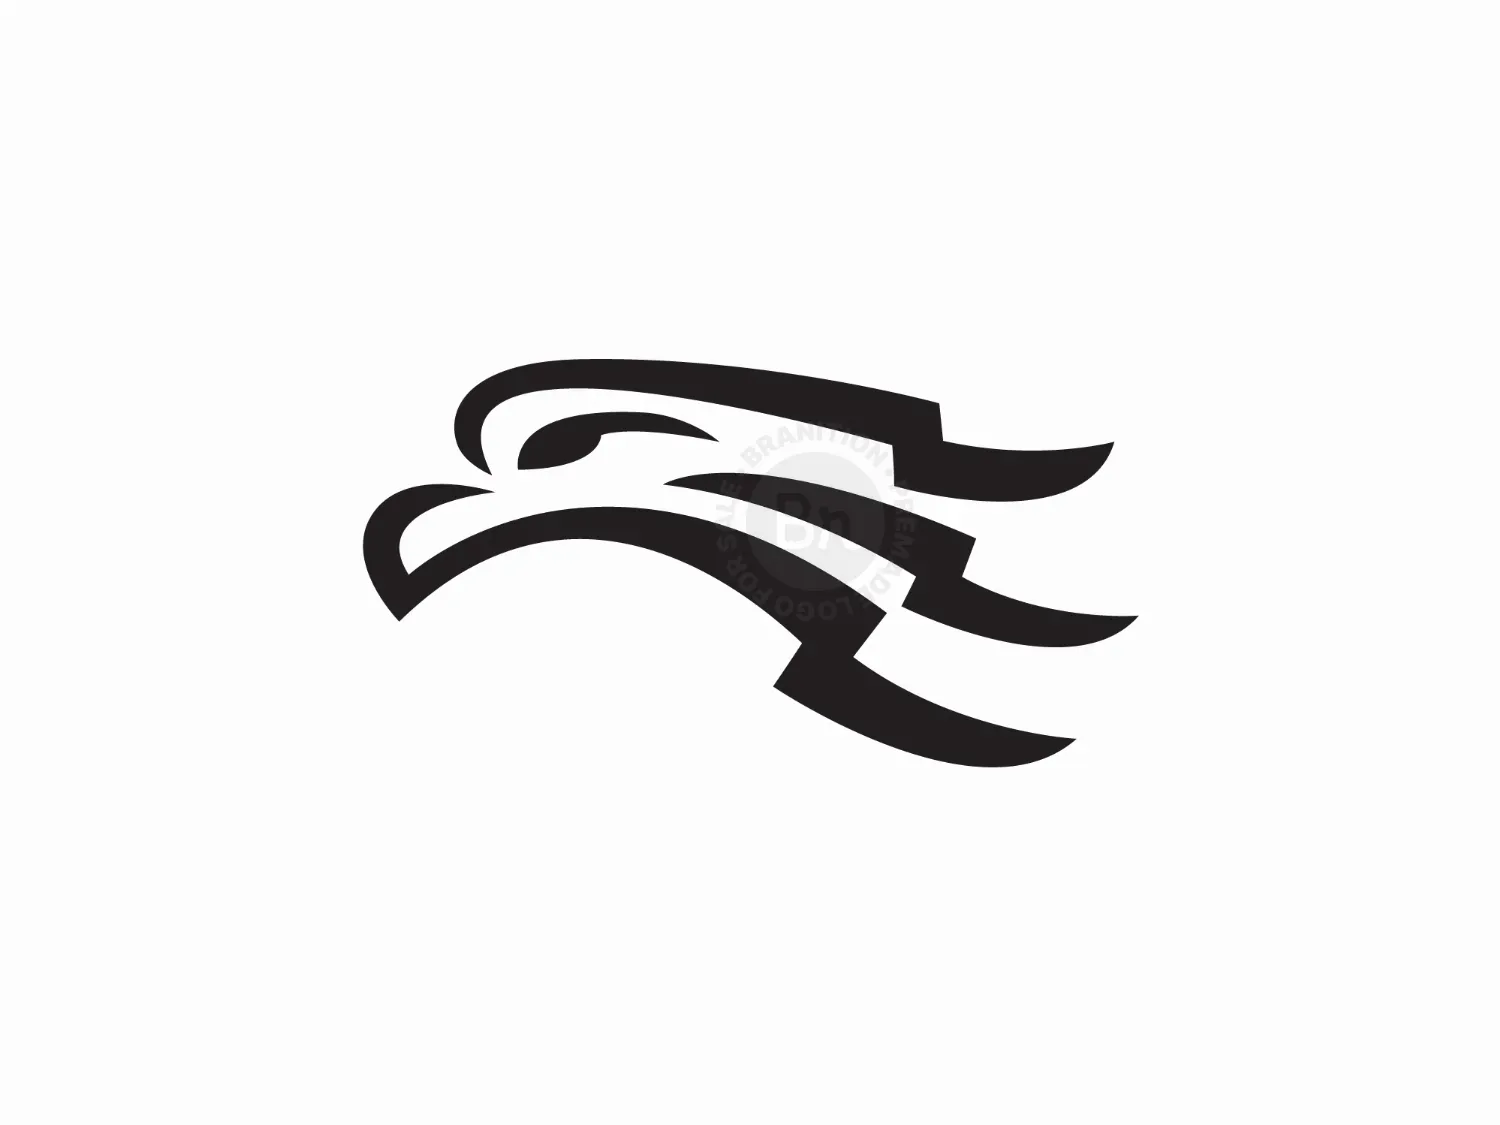 Eagle Flag Logo